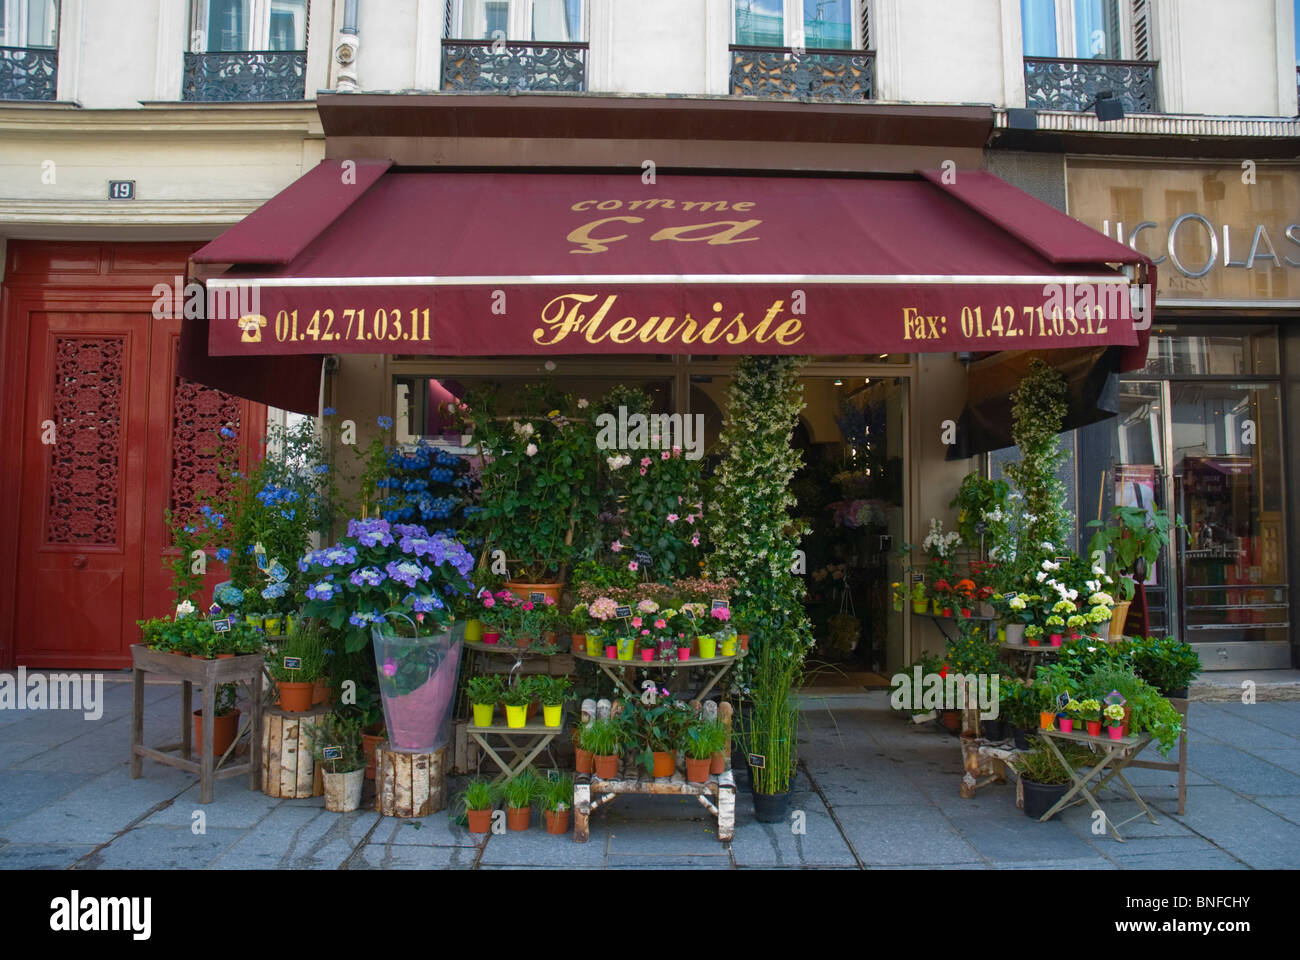 Flower shop Rue Saint Antoine Le Marais district Paris France Europe Stock Photo